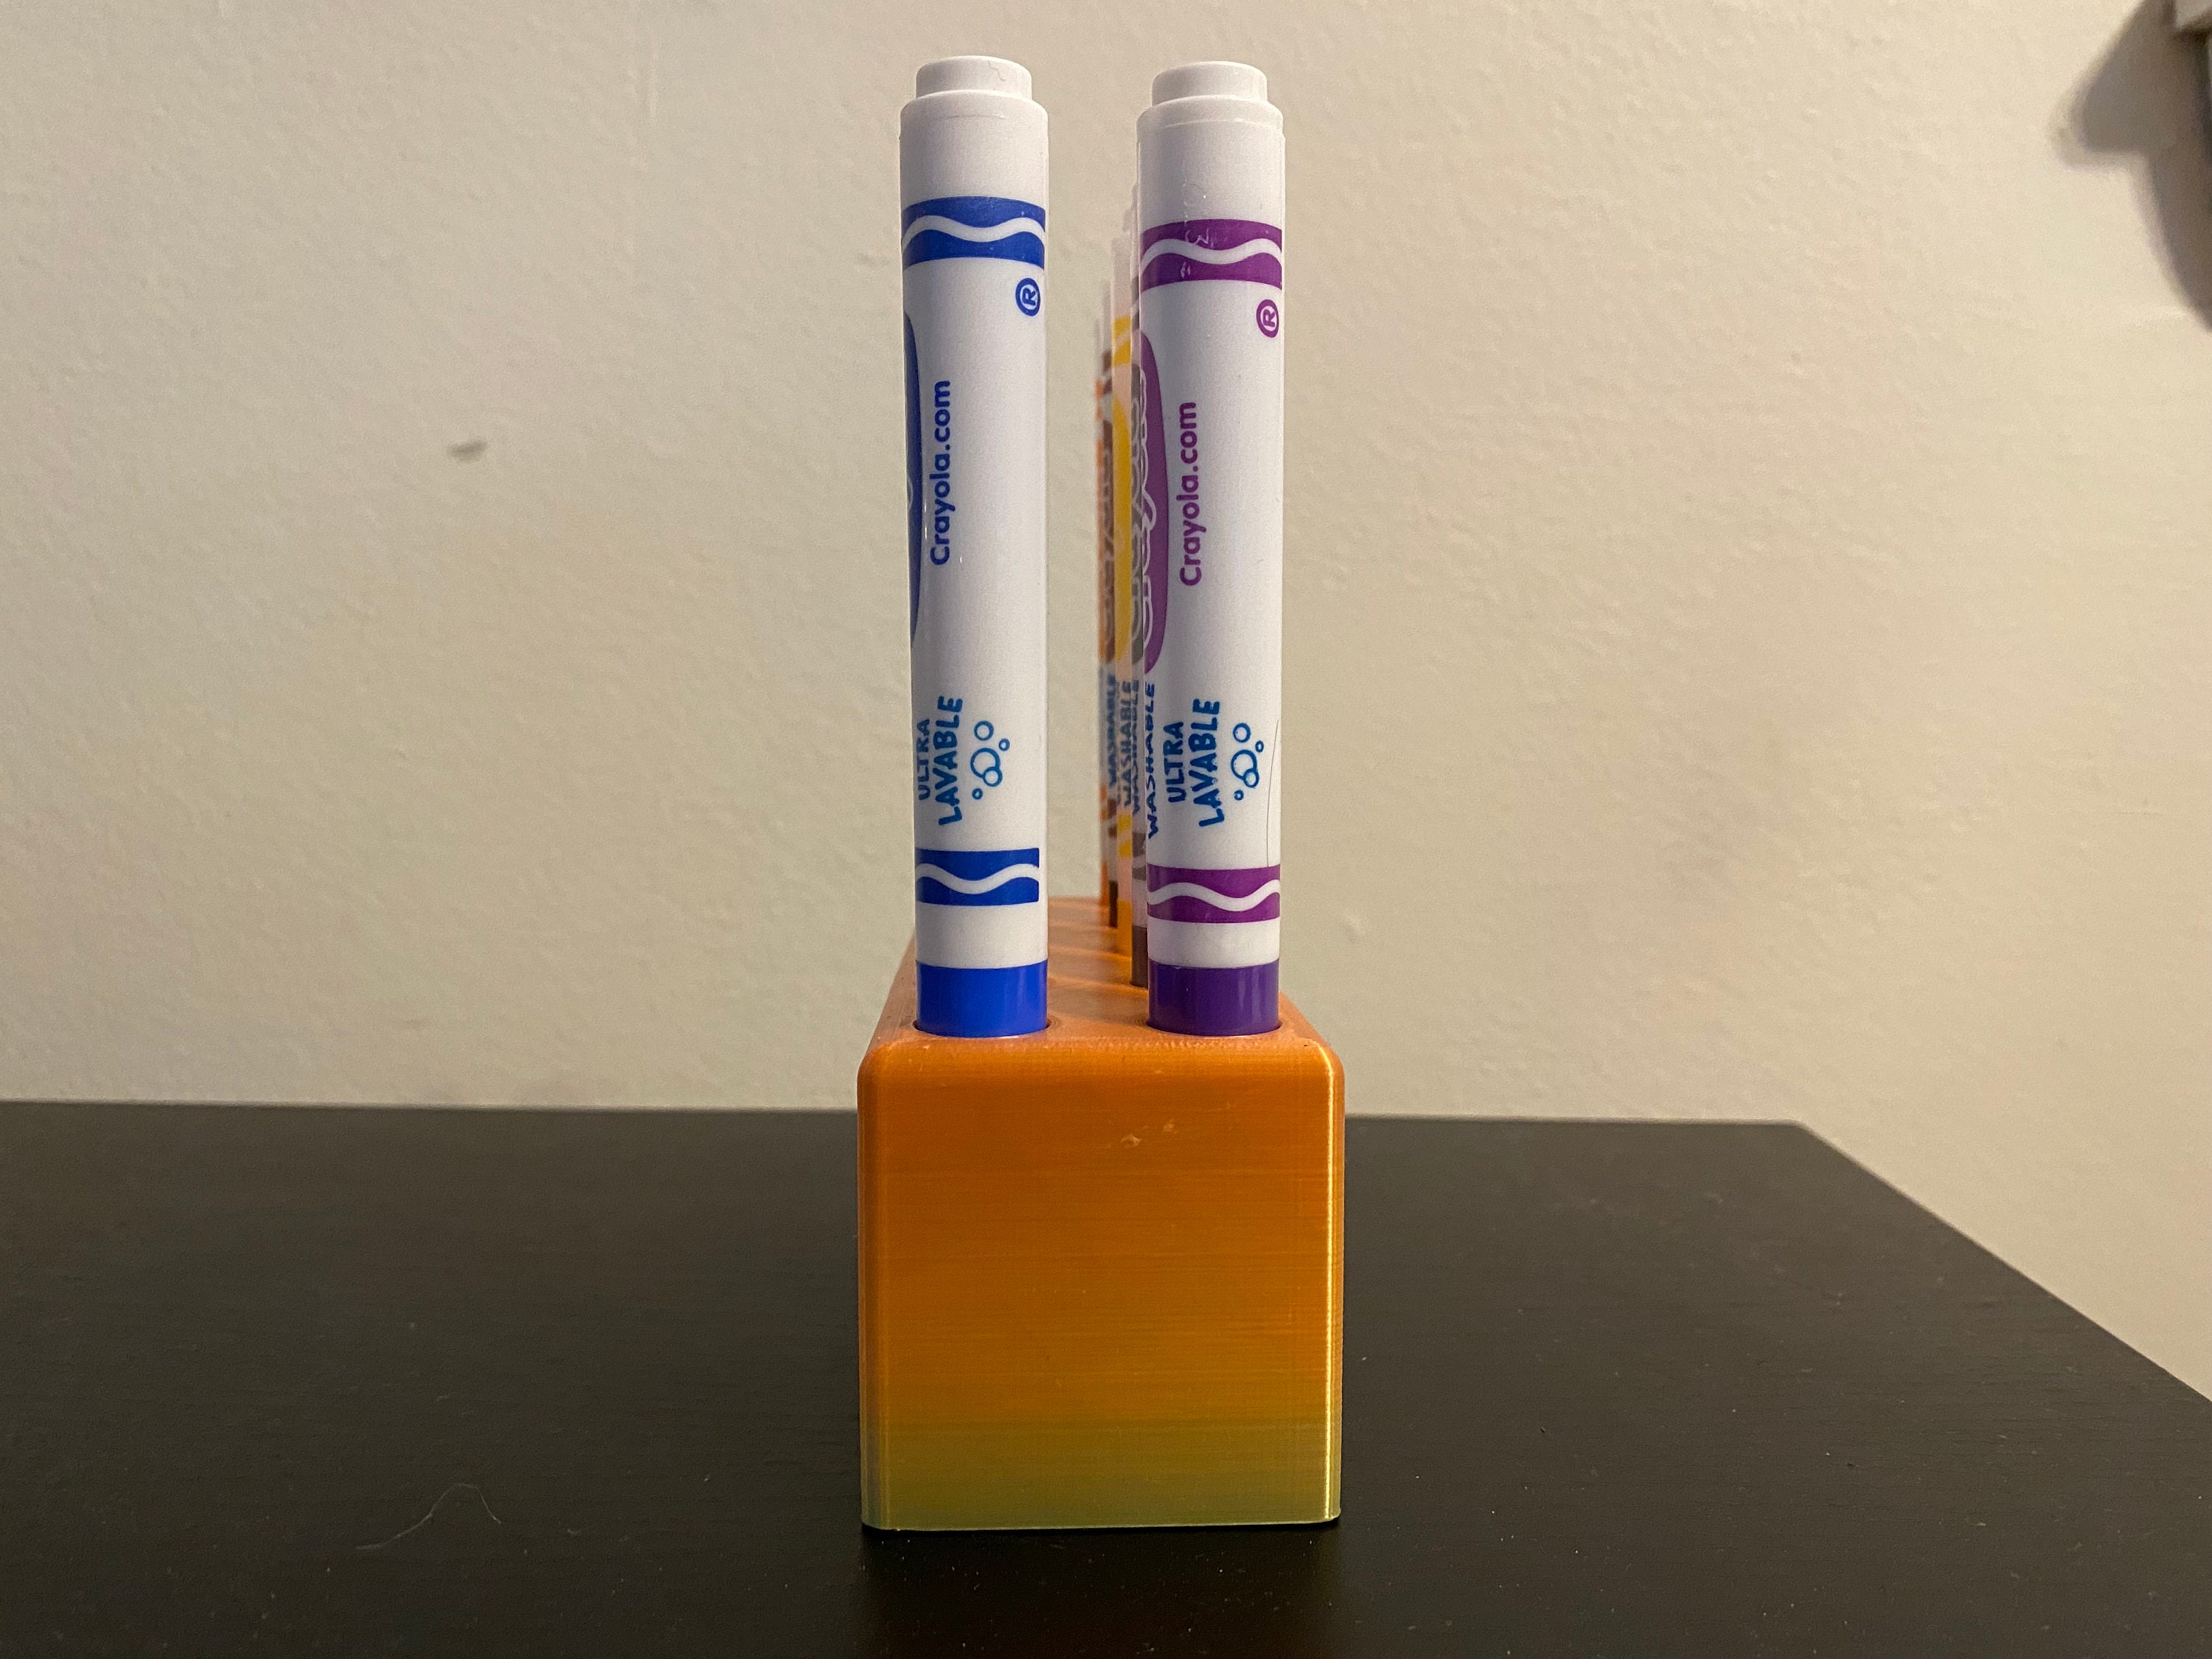 3D Print STL File Only Crayola Marker Holder Organizer Kids Broad Tip 